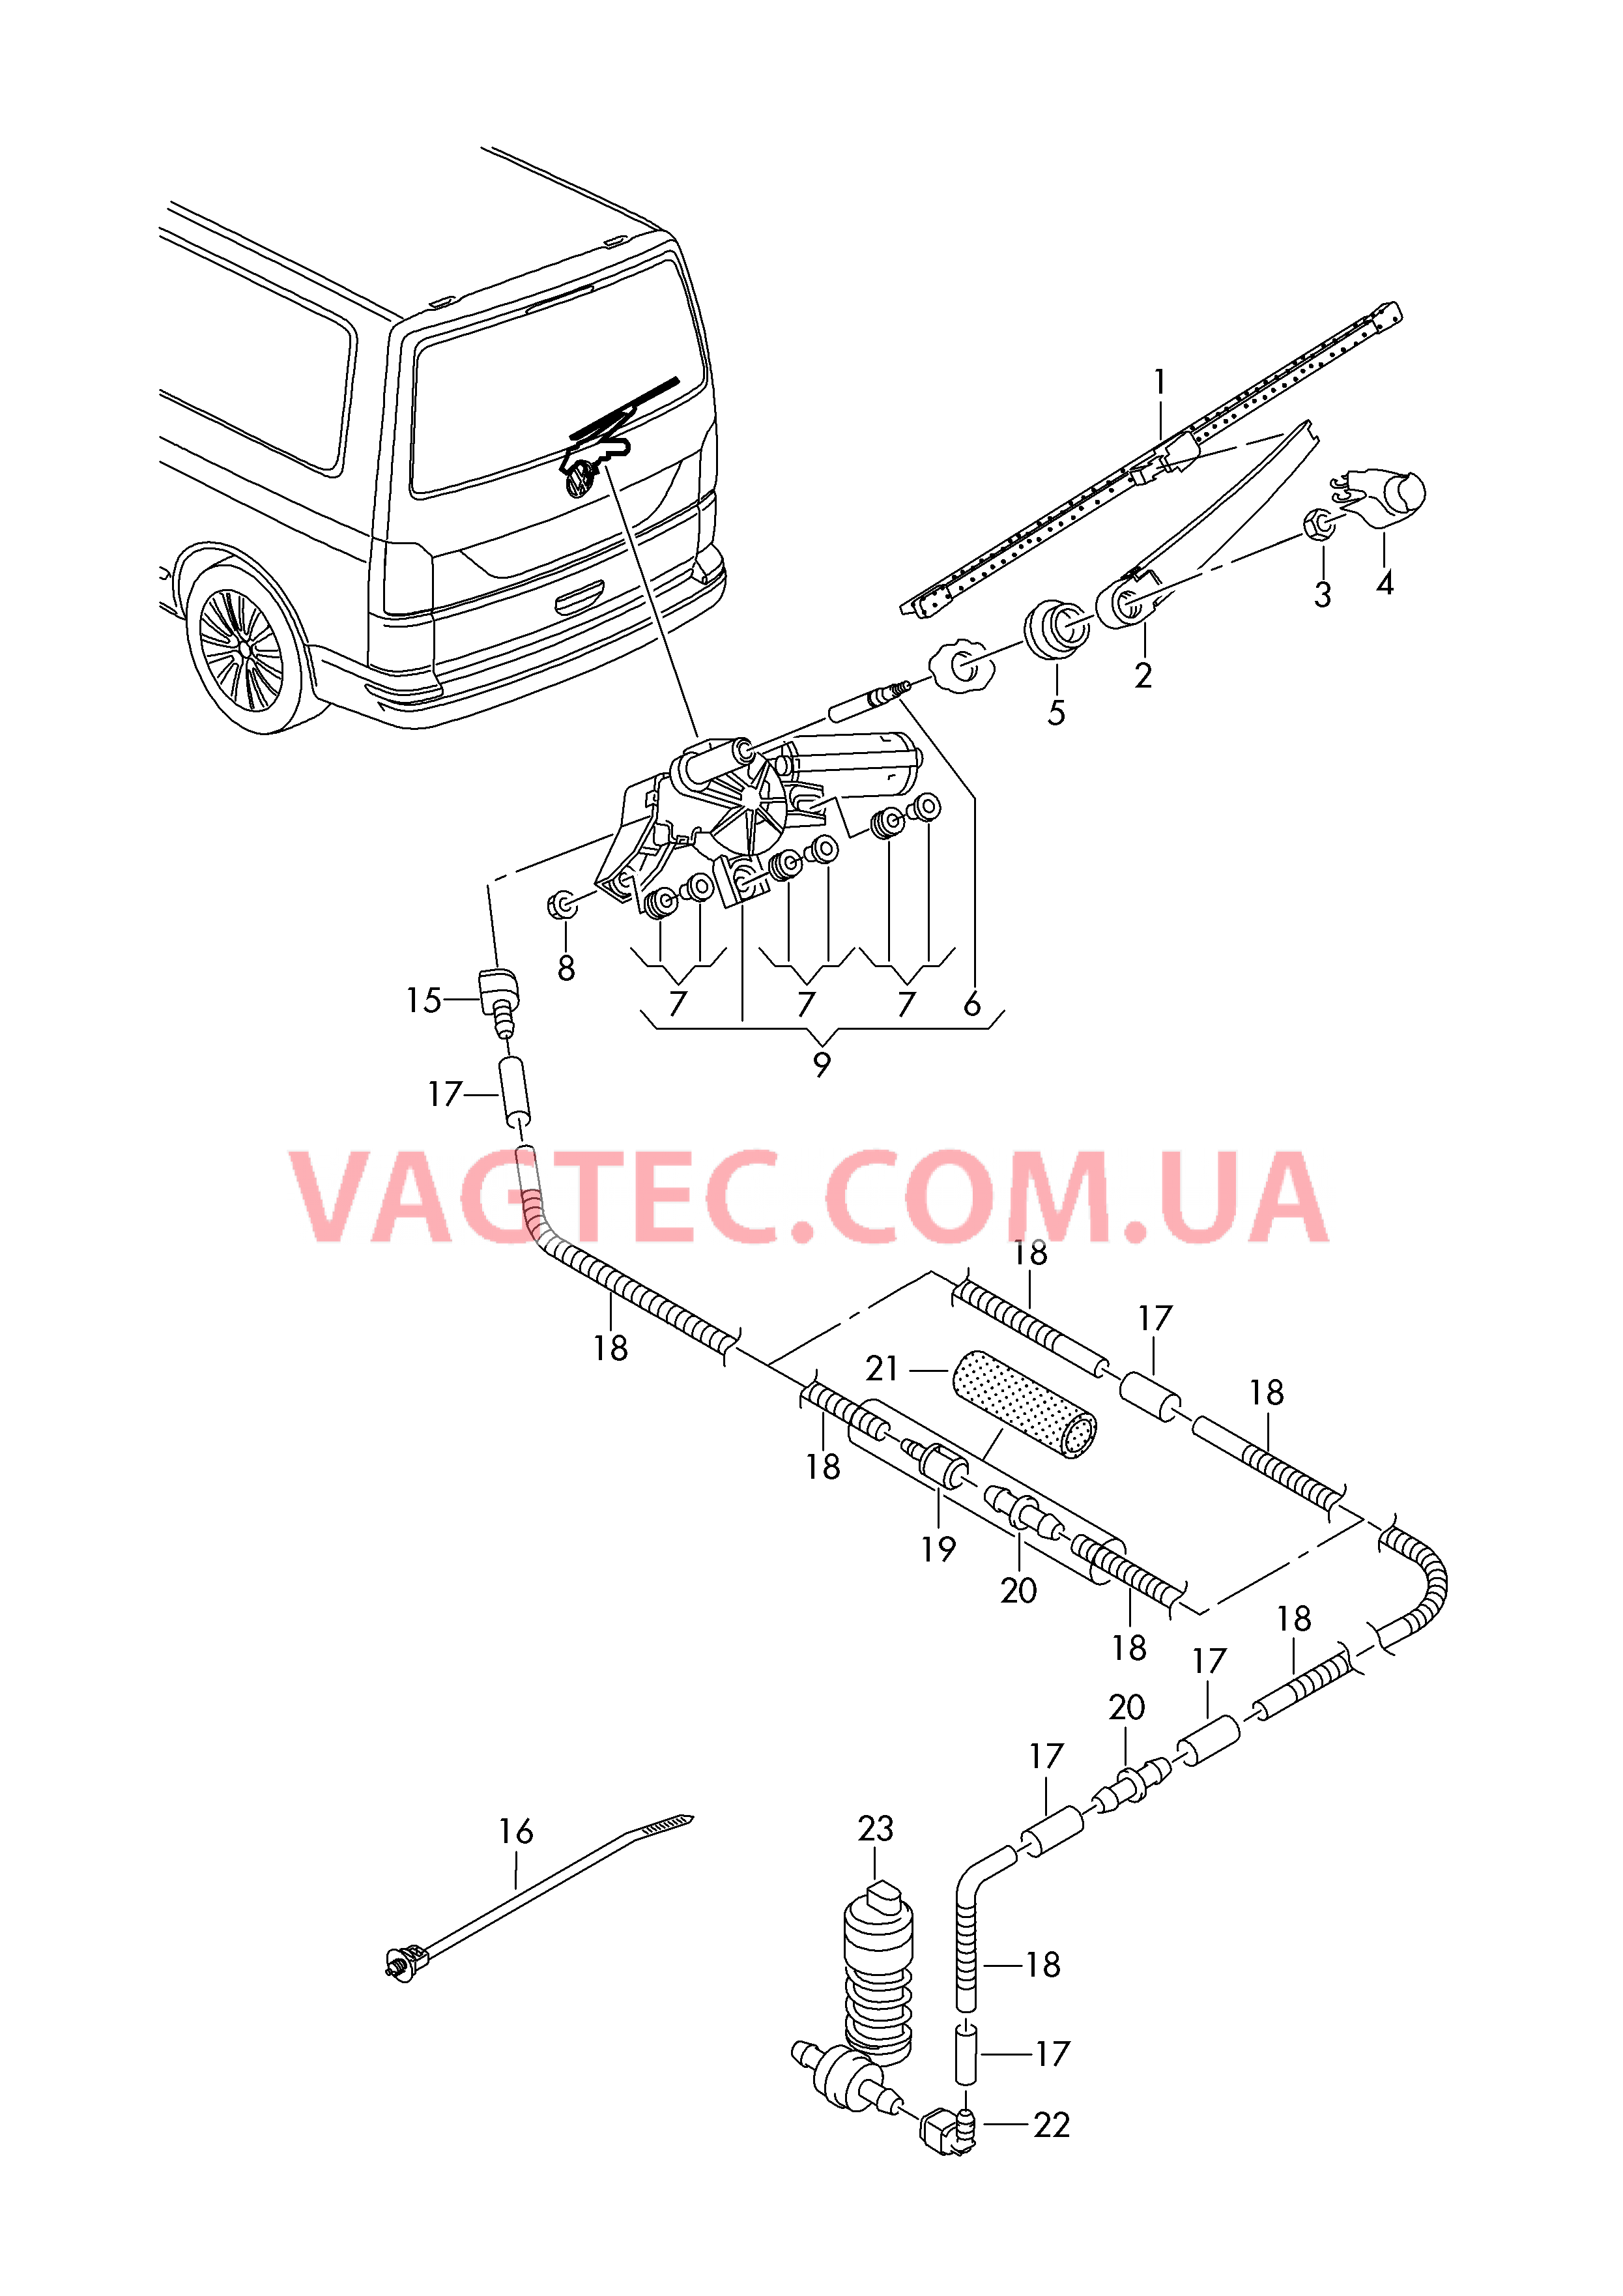 Стеклоочиститель/омыватель для заднего стекла  Крышка багажного отсека  для VOLKSWAGEN Transporter 2018